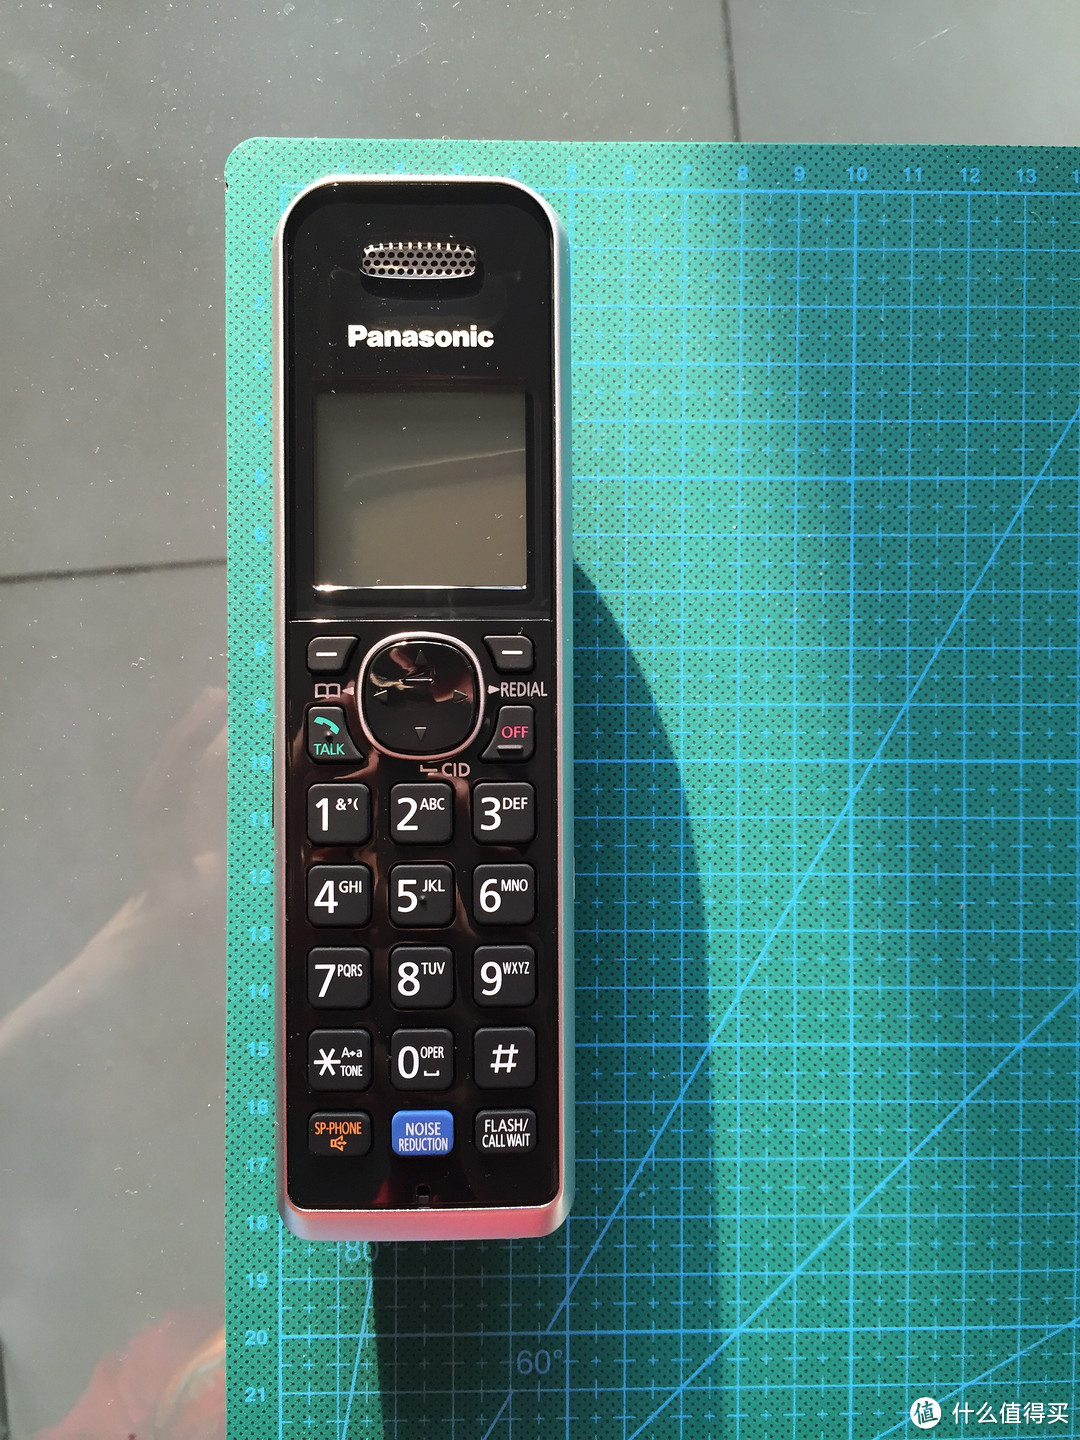 #本站首晒# 手机固话二合一：Panasonic 松下 KXTG7875S 无绳电话 开箱&使用报告